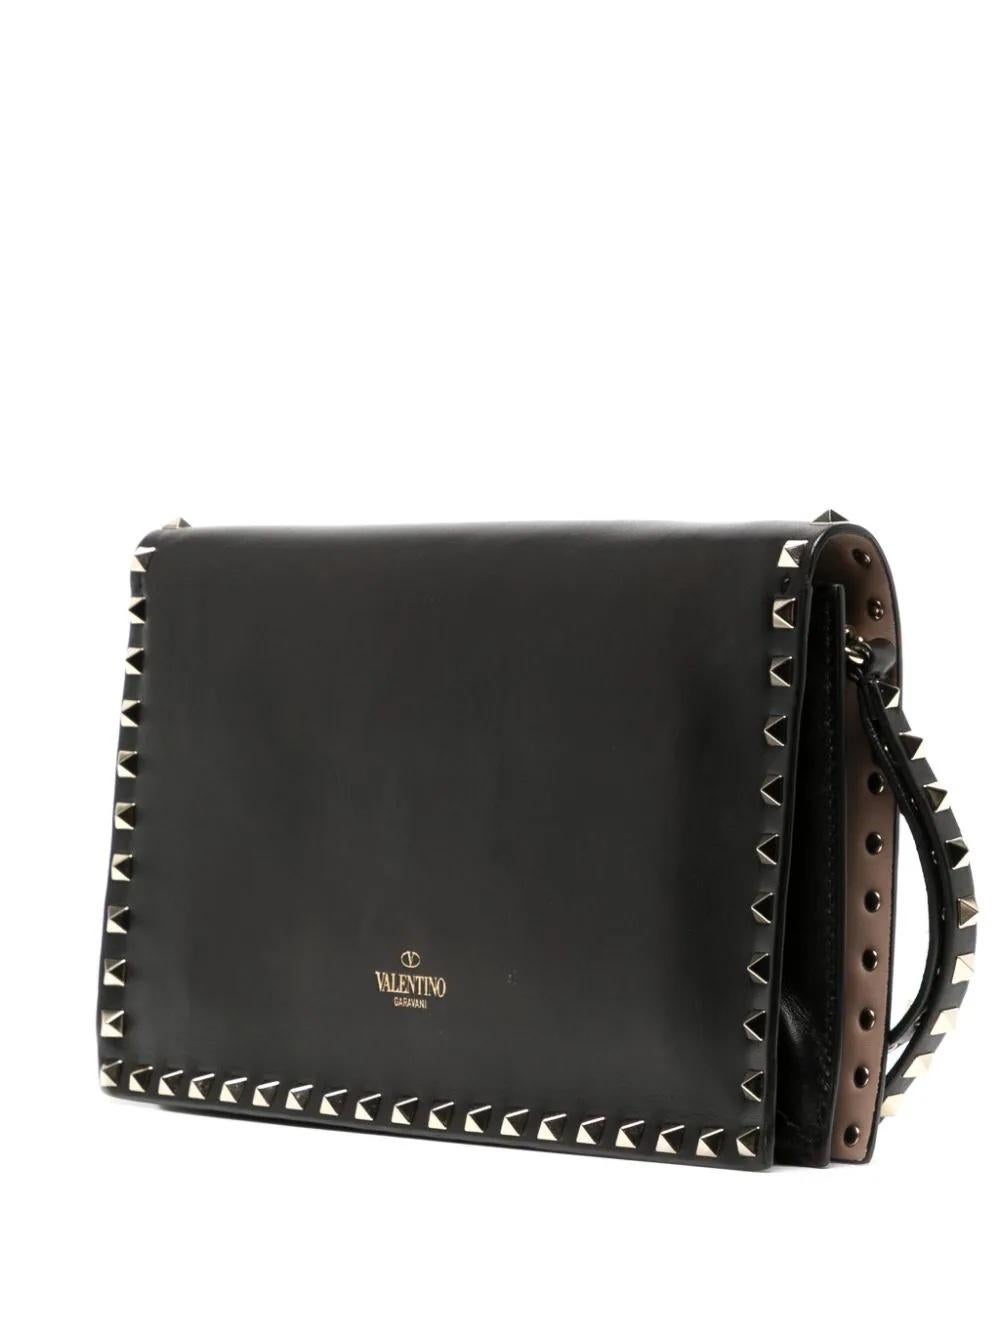 Die Valentino Rockstud Leder Clutch Bag ist ein atemberaubendes und vielseitiges Accessoire, das mühelos kantigen Stil mit zeitloser Eleganz verbindet. Die Tasche ist mit den ikonischen, pyramidenförmigen Rockstuds von Valentino versehen, die